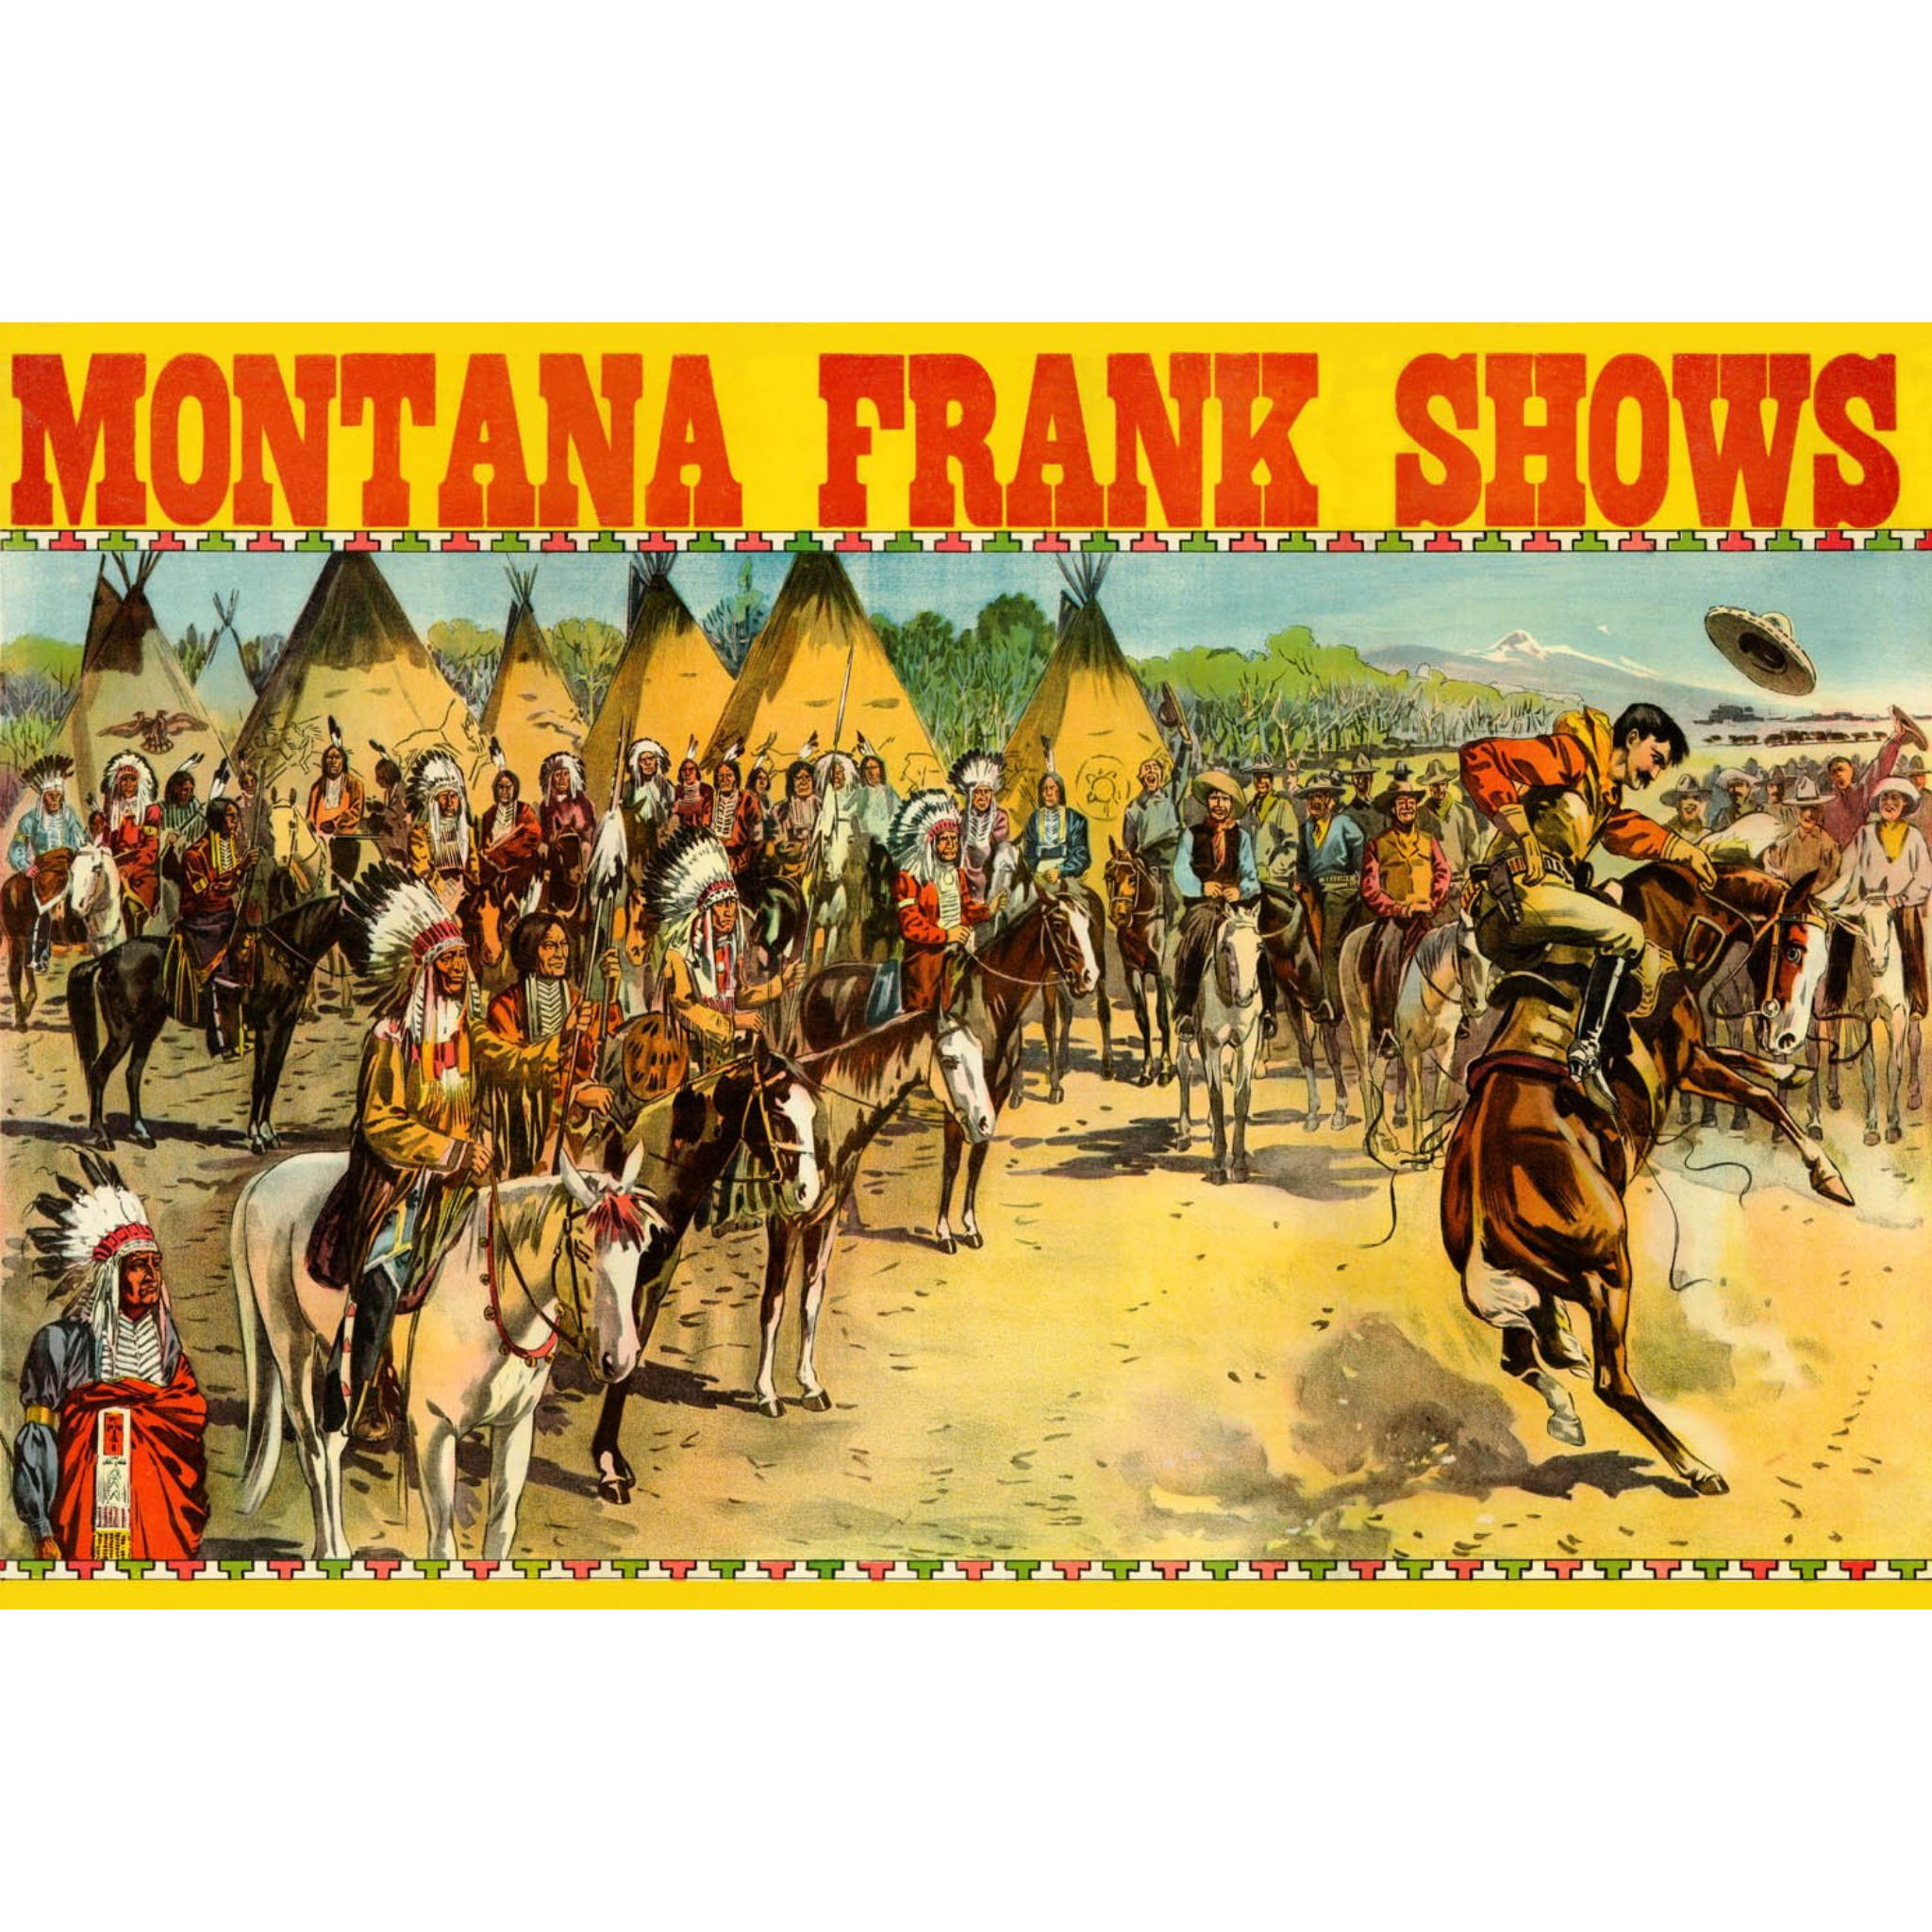 Montana Frank Shows - 1906 Chromolithograph